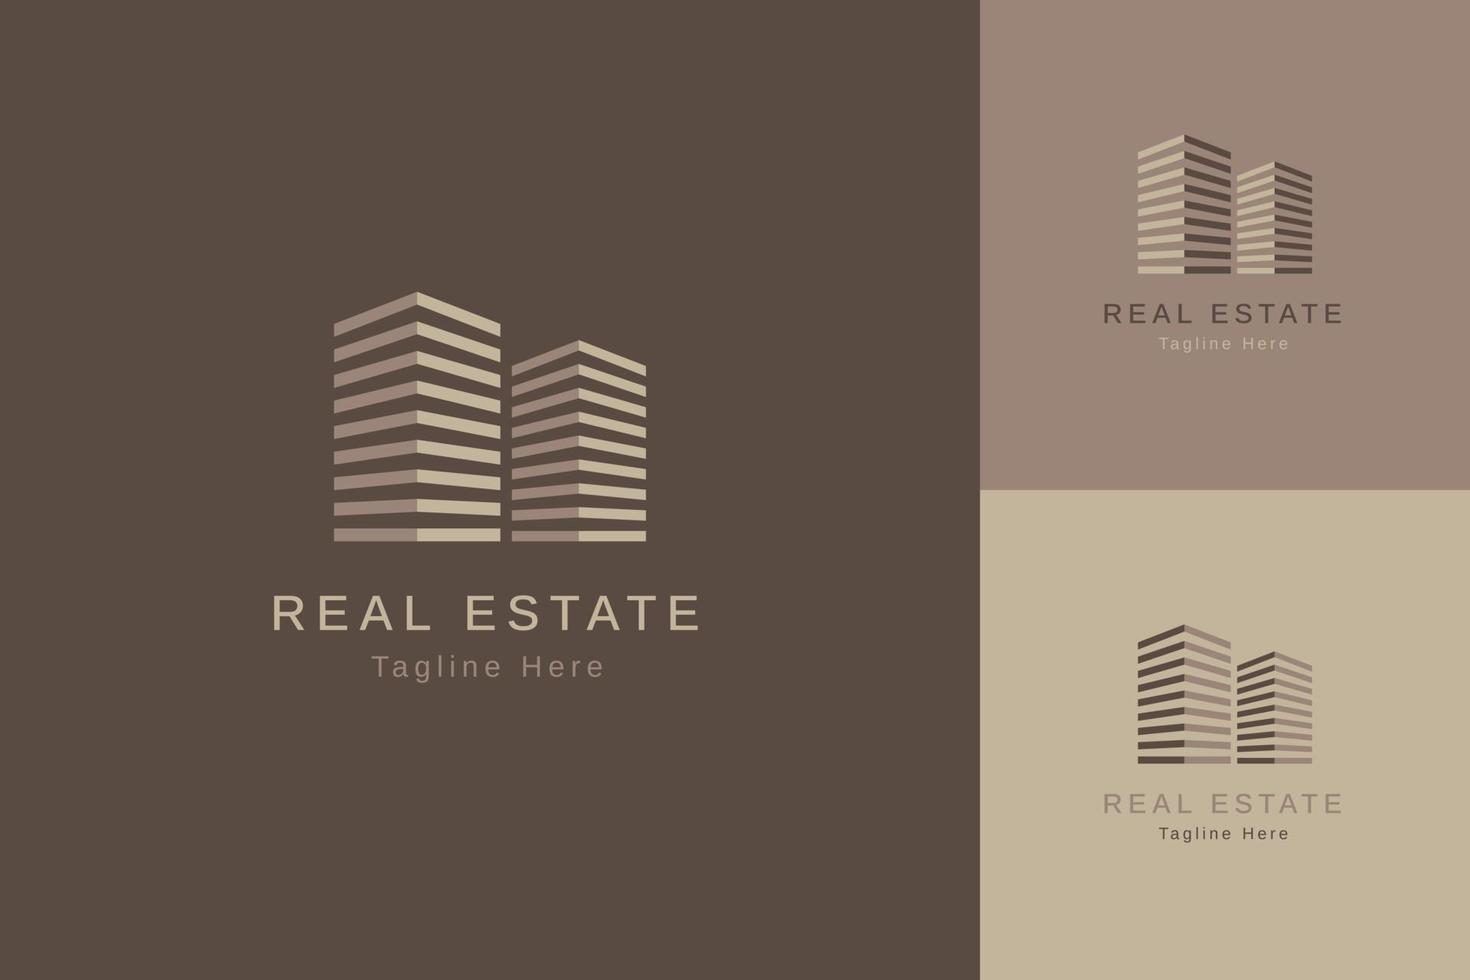 ensemble de modèle de conception de vecteur de logo de propriété immobilière avec un style de couleur différent